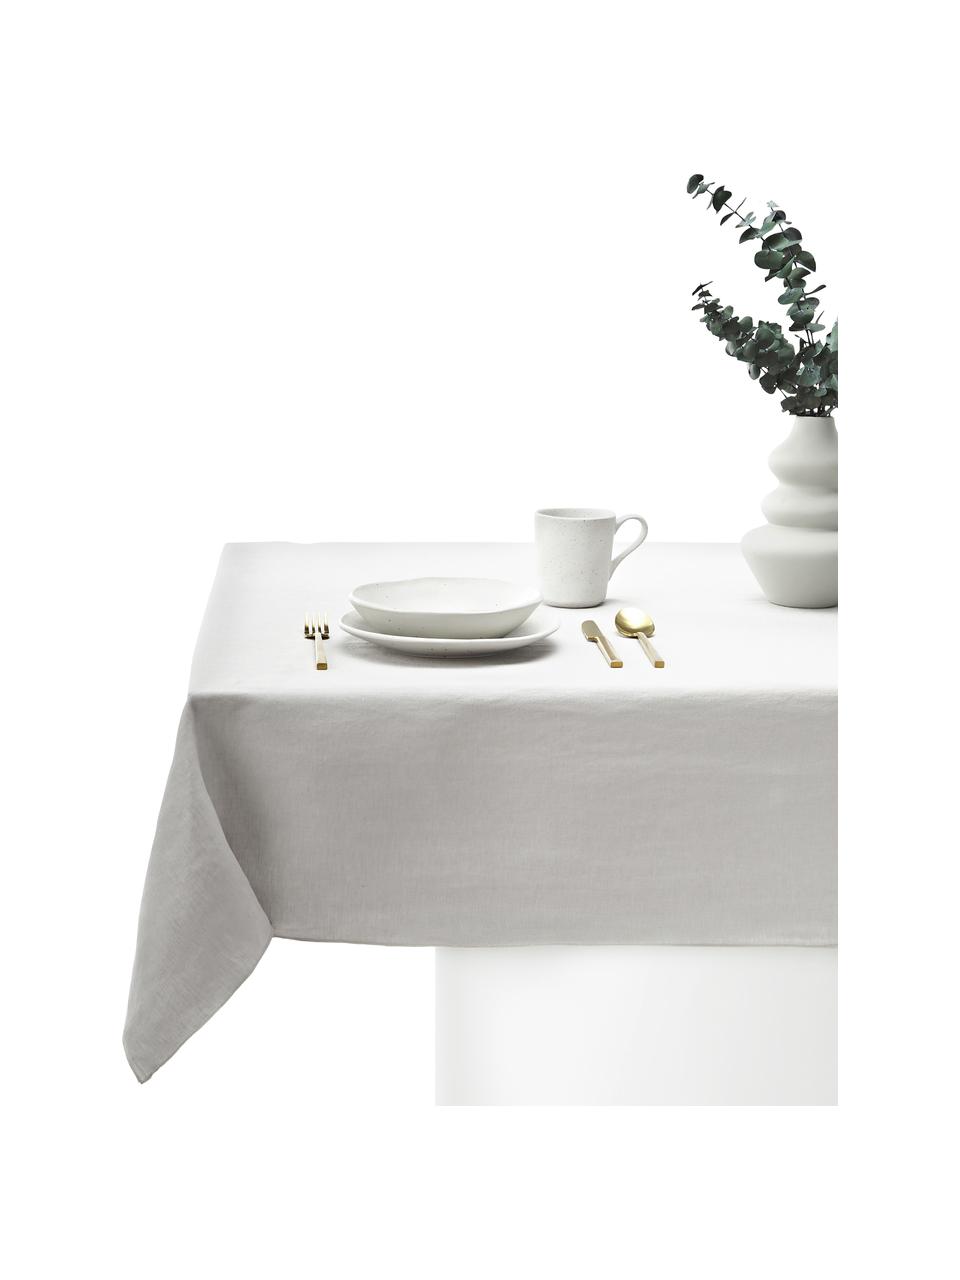 Leinen-Tischdecke Kennedy mit Umkettelung, 100 % gewaschenes Leinen, European Flax zertifiziert, Grau, B 140 x L 250 cm